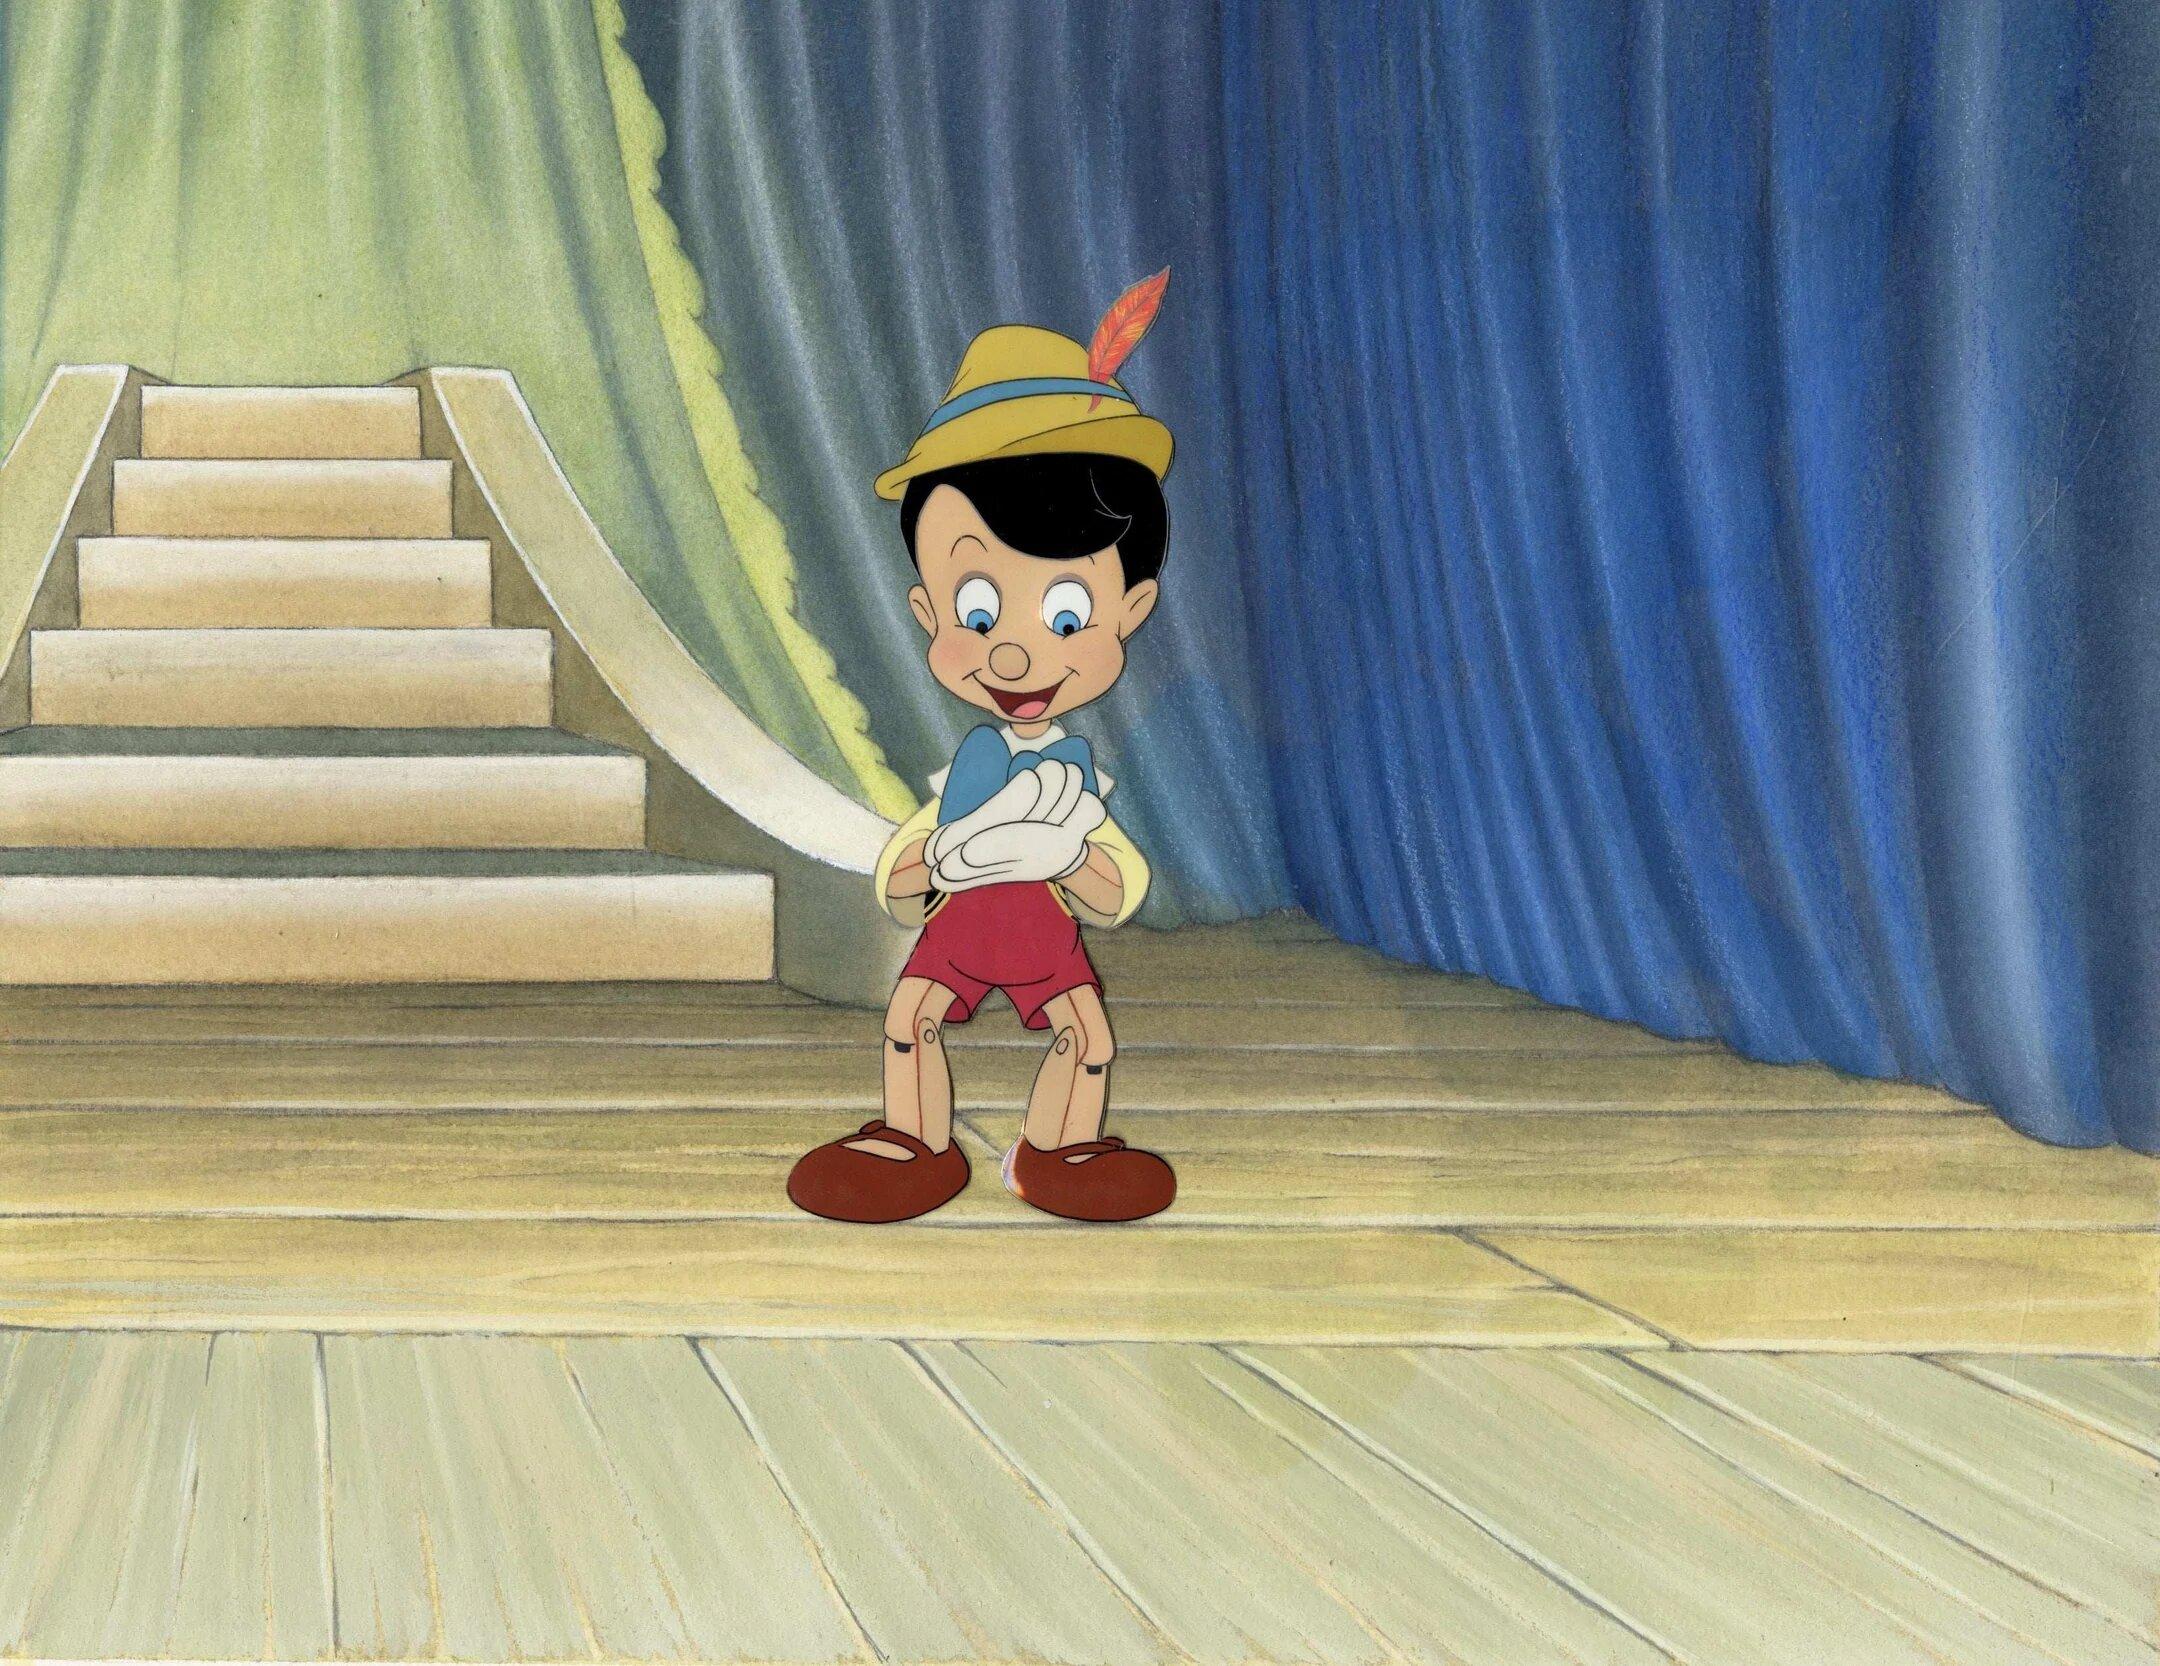 Cel de production originale de Pinocchio sur le contexte de production : Pinocchio